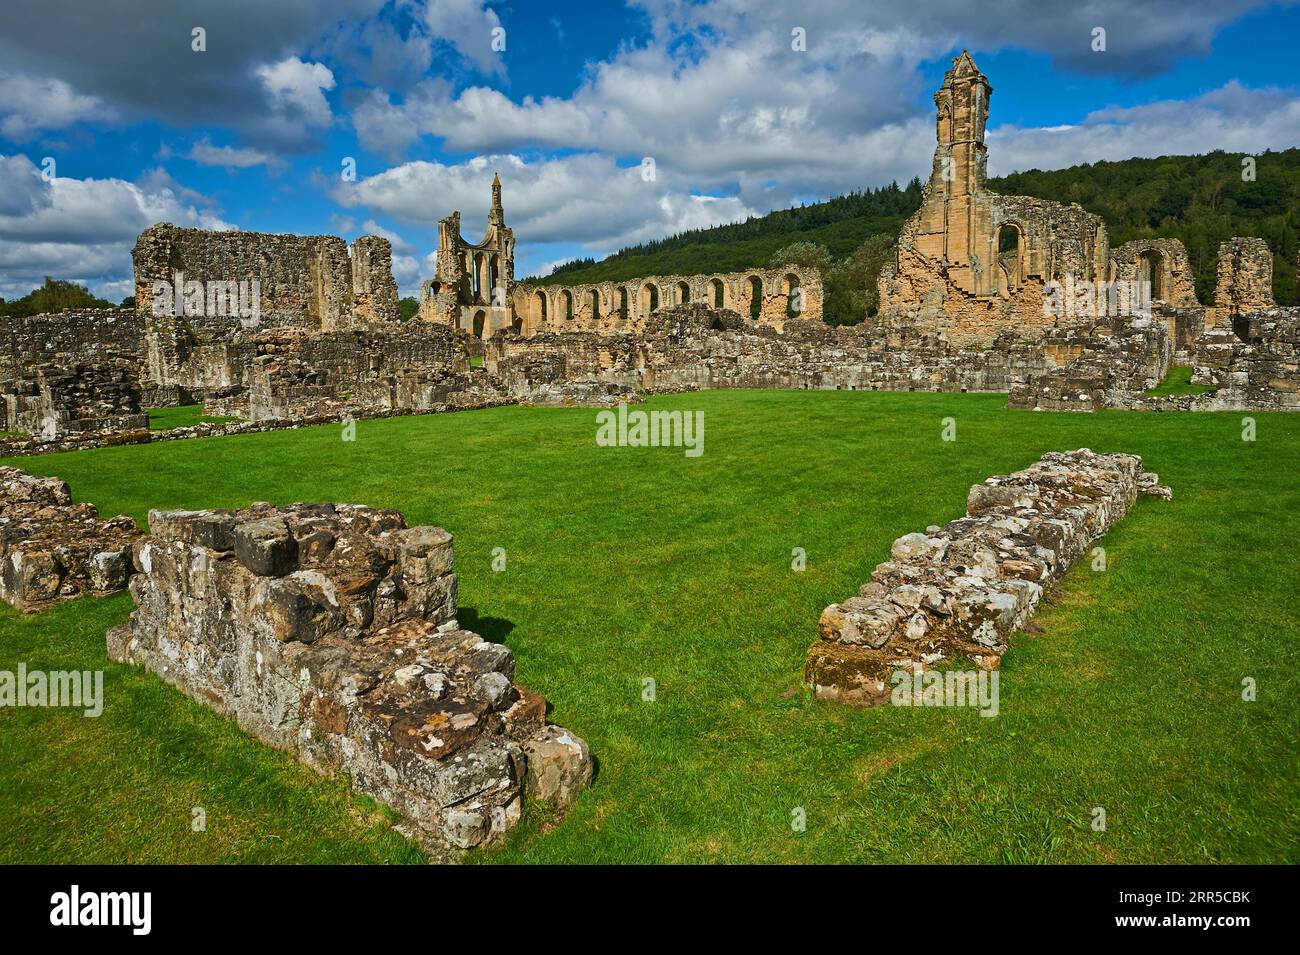 Ruines de l'abbaye de Byland, classée Grade 1 l'abbaye cistercienne de Rydale, dans le North Yorkshire, est une ruine historique dans le North Yorkshire Moors National Park Banque D'Images